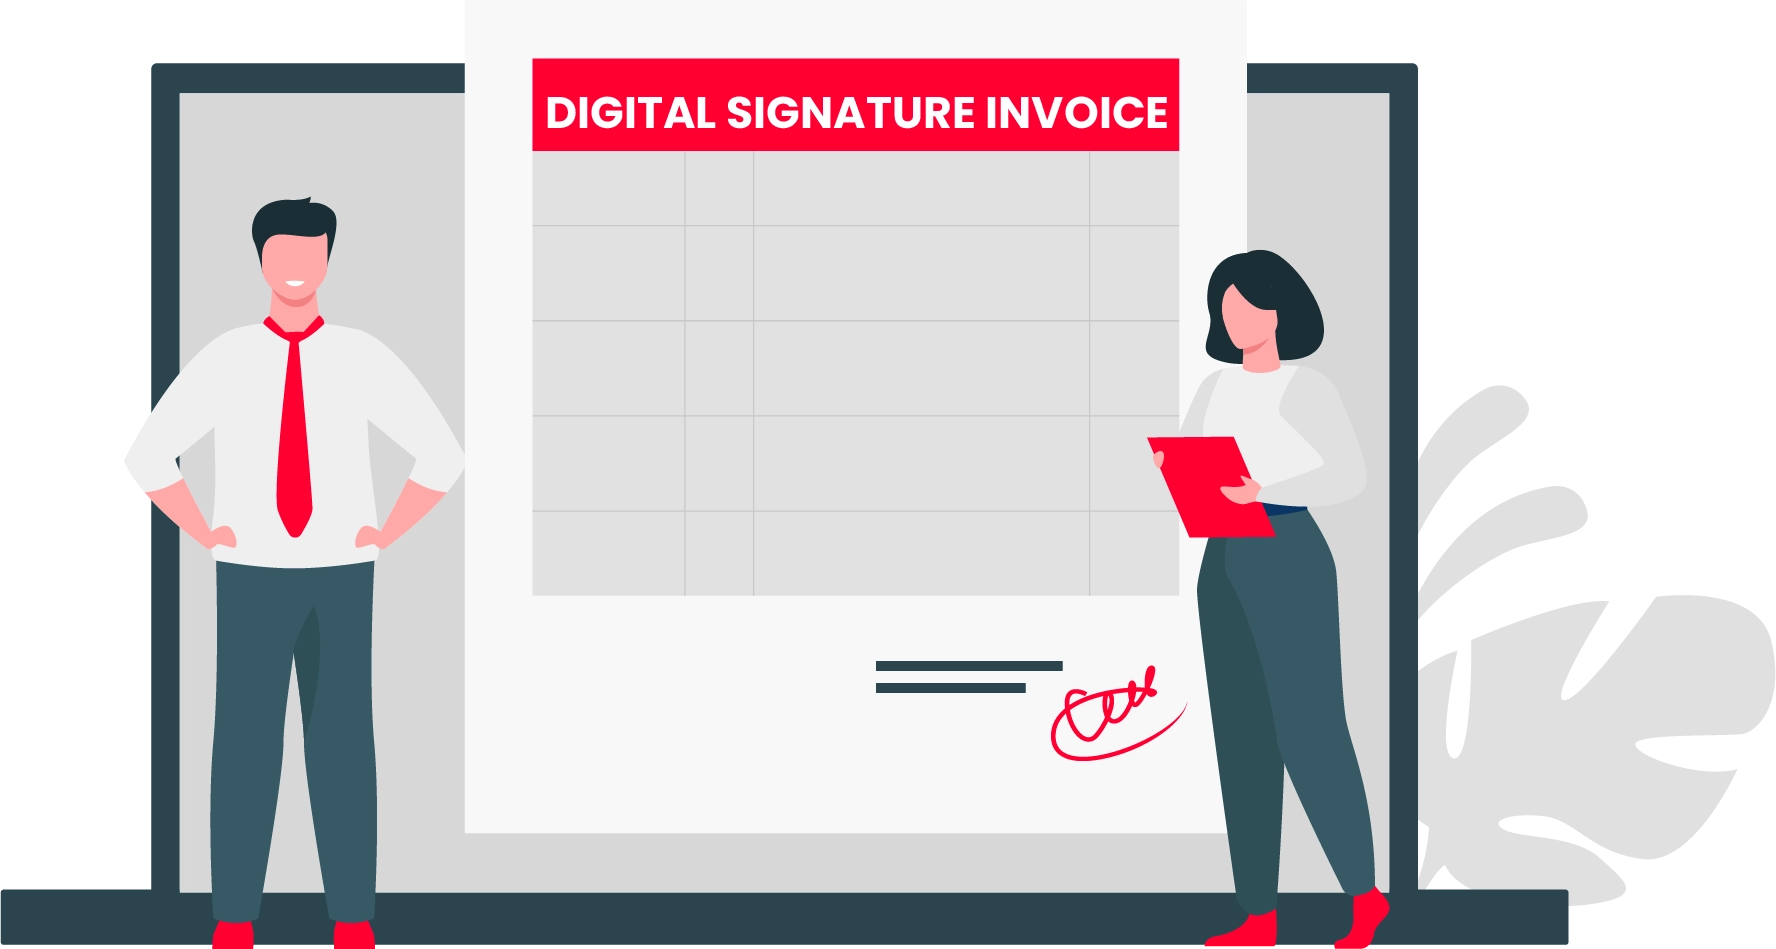 Digital Signature Invoice Format